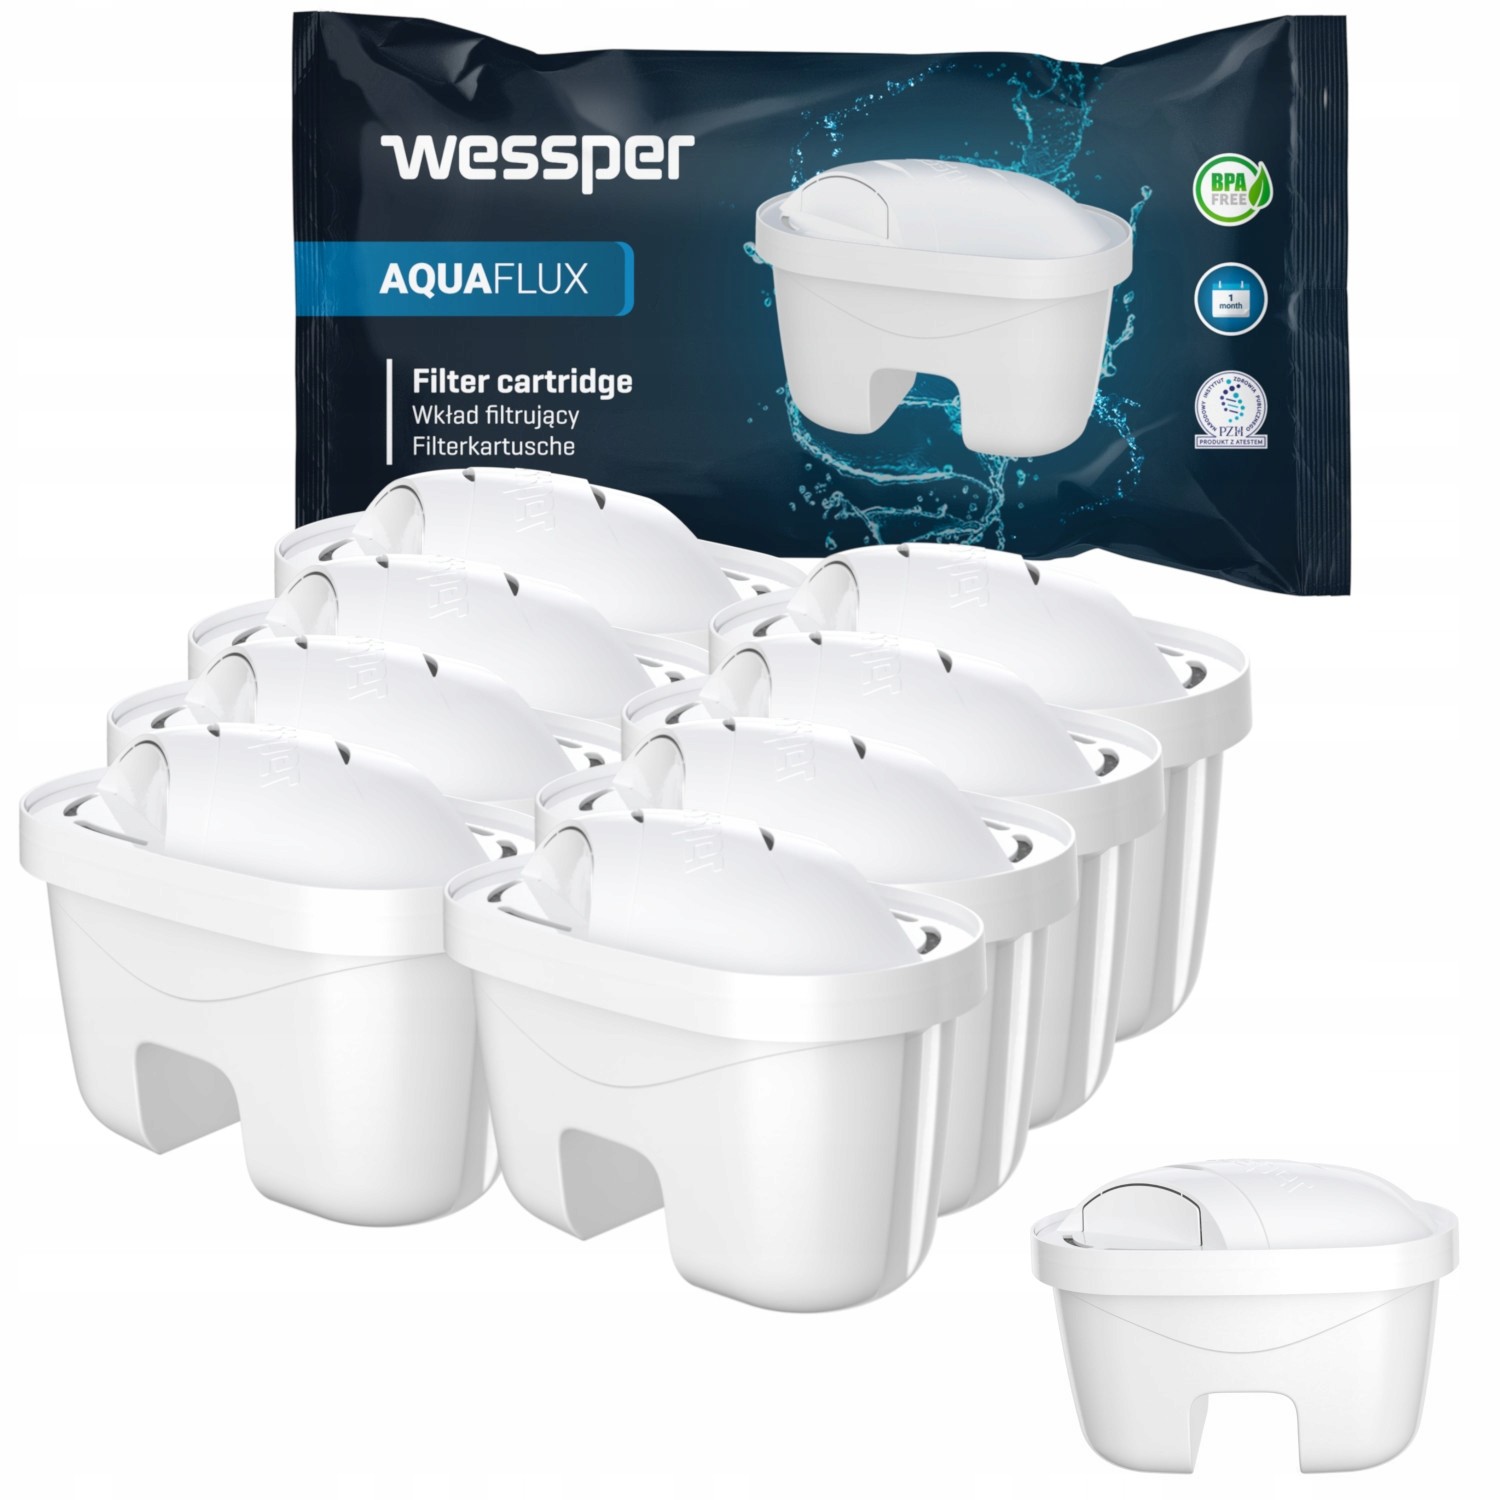 8x vodní filtr Wessper Aquaflux do konvice Laica náhradní Biflux